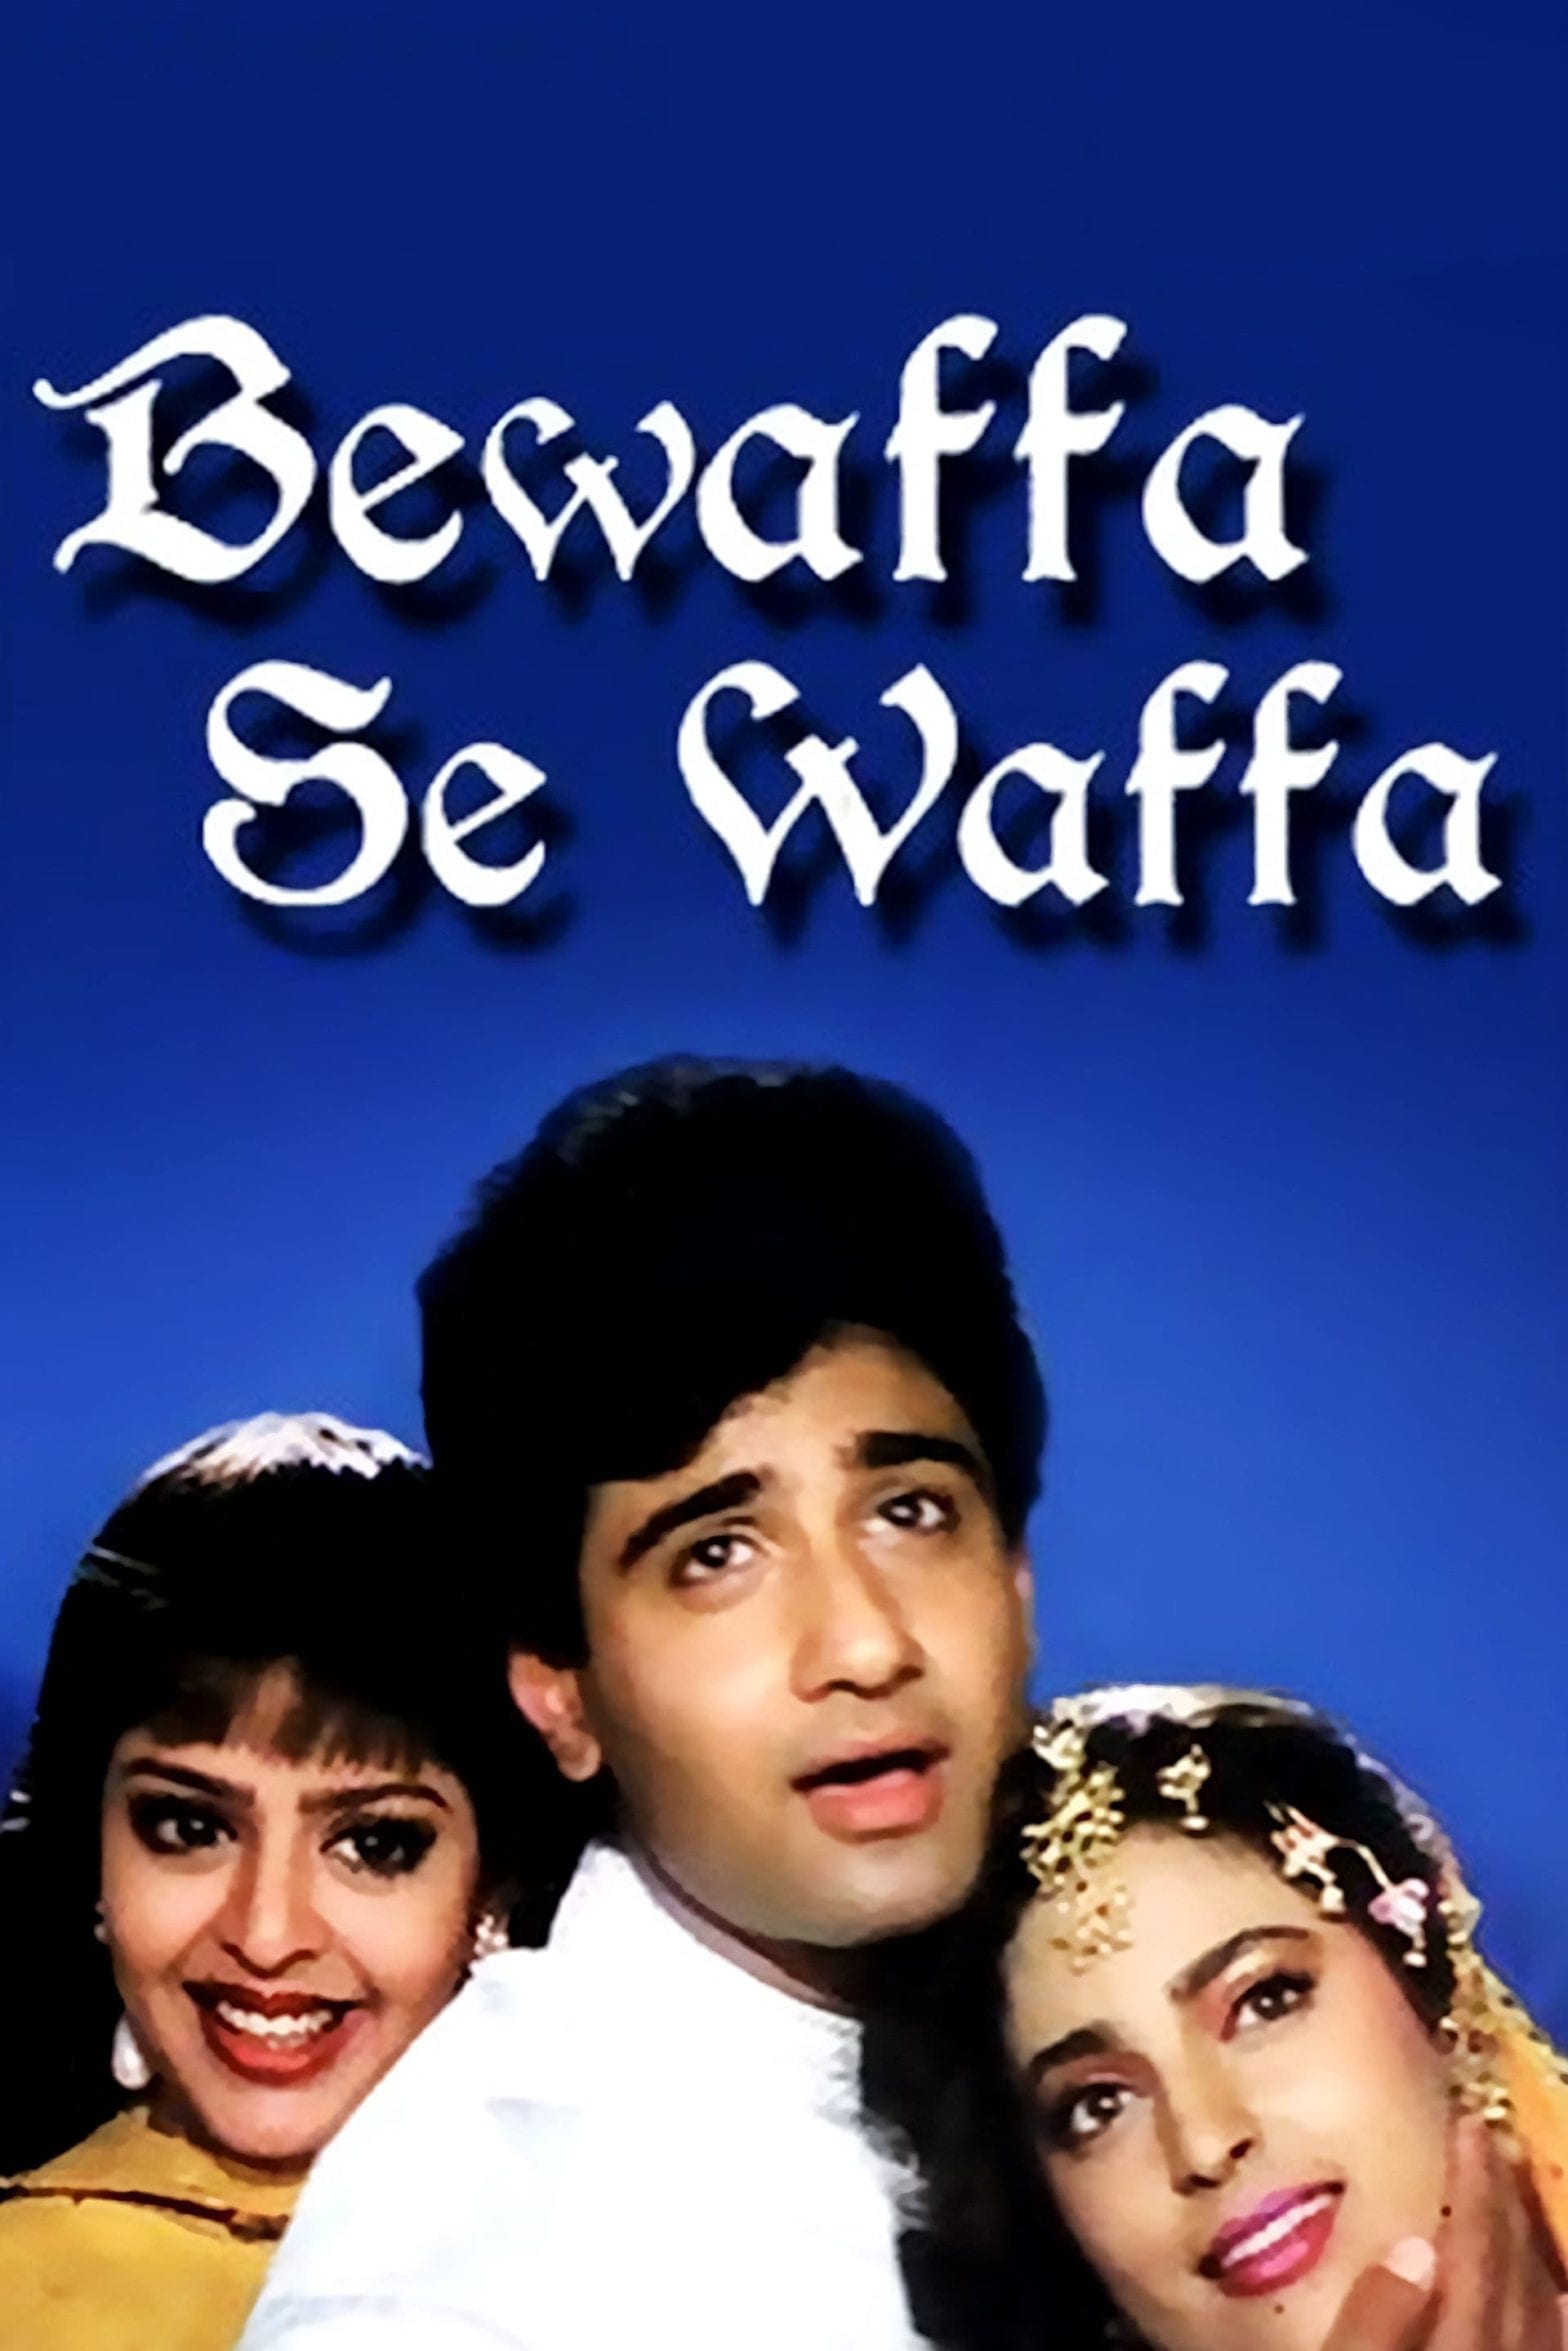 Poster for the movie "Bewaffa Se Waffa"